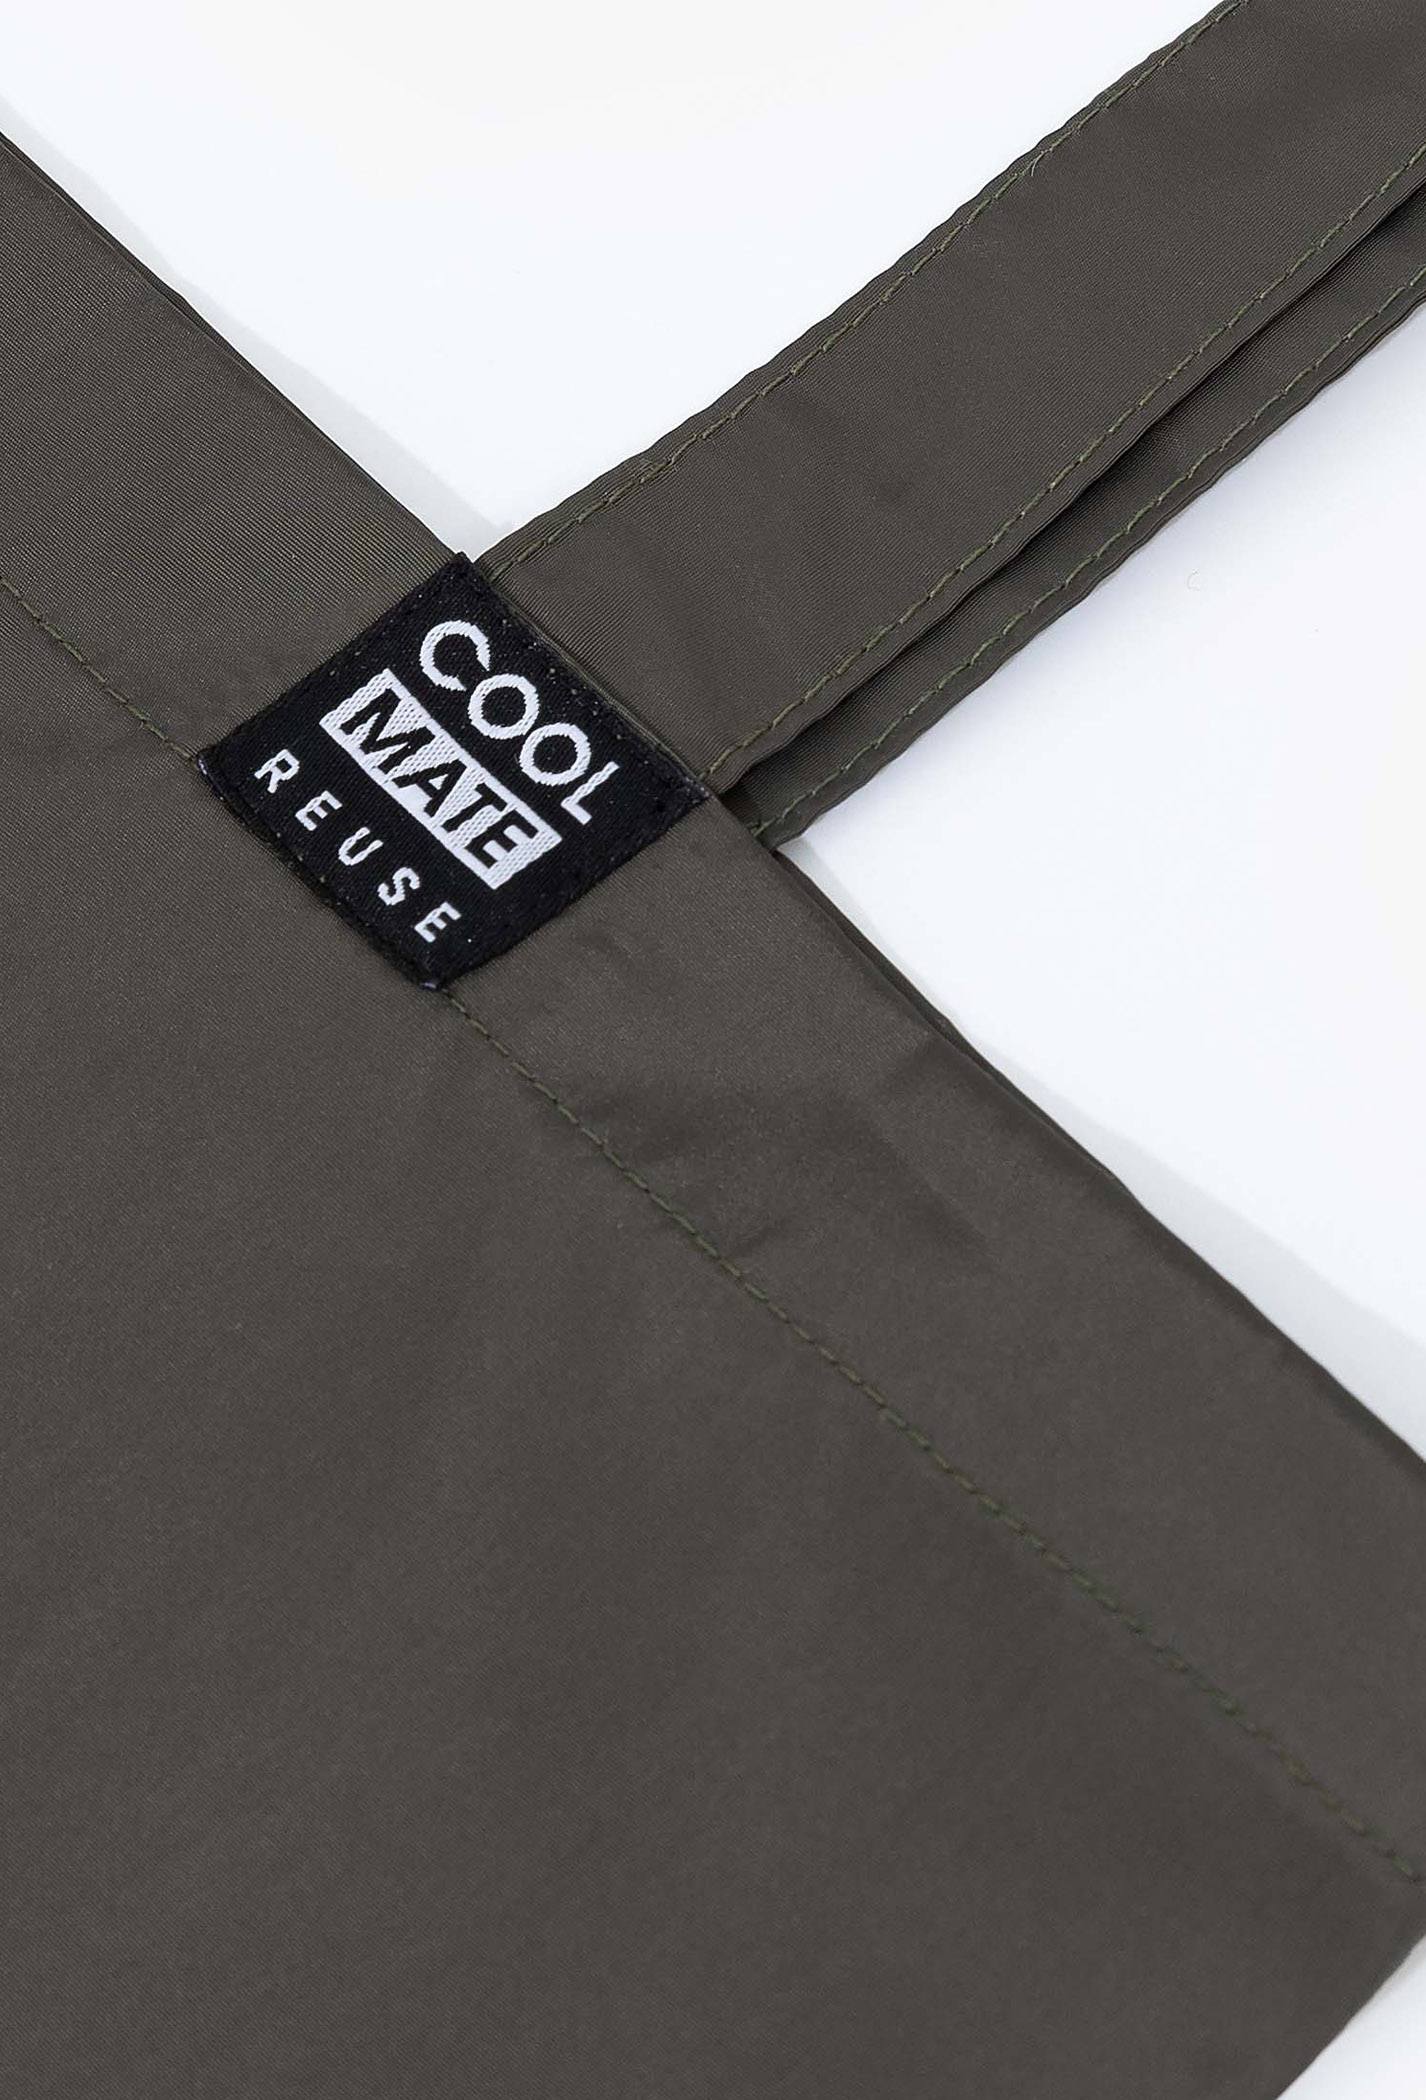 COOLMATE - Túi Clean Bag in New Normal Day màu xanh rêu thời trang, tiện lợi từ